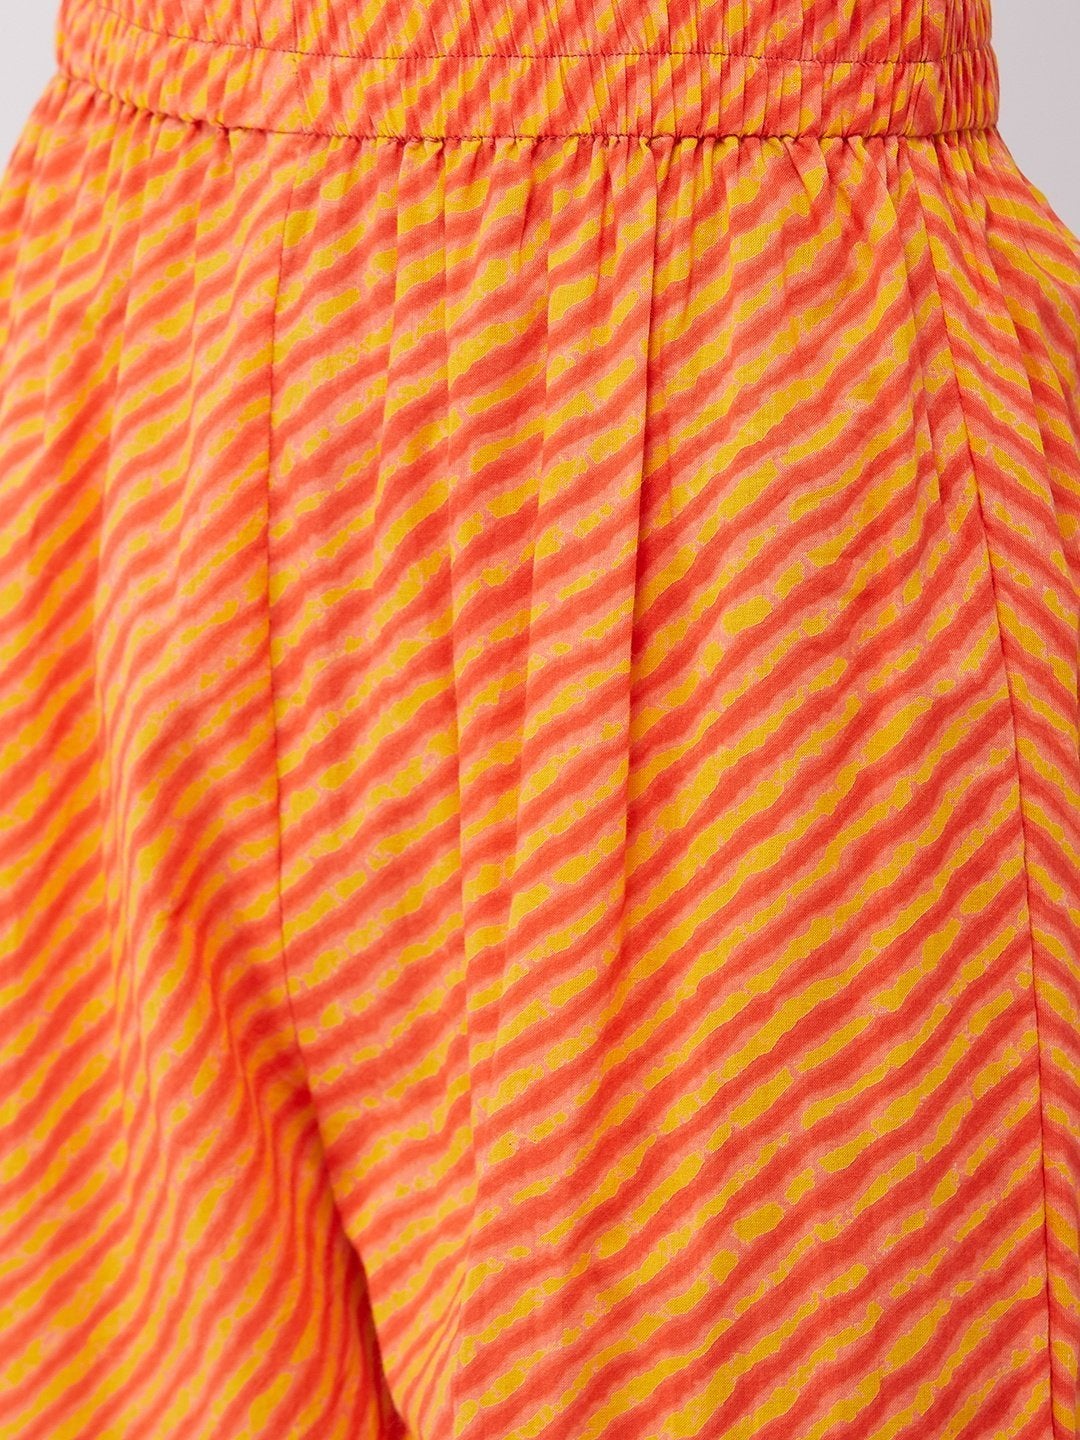 Women's Orange Floral Kurta Pant Set - InWeave